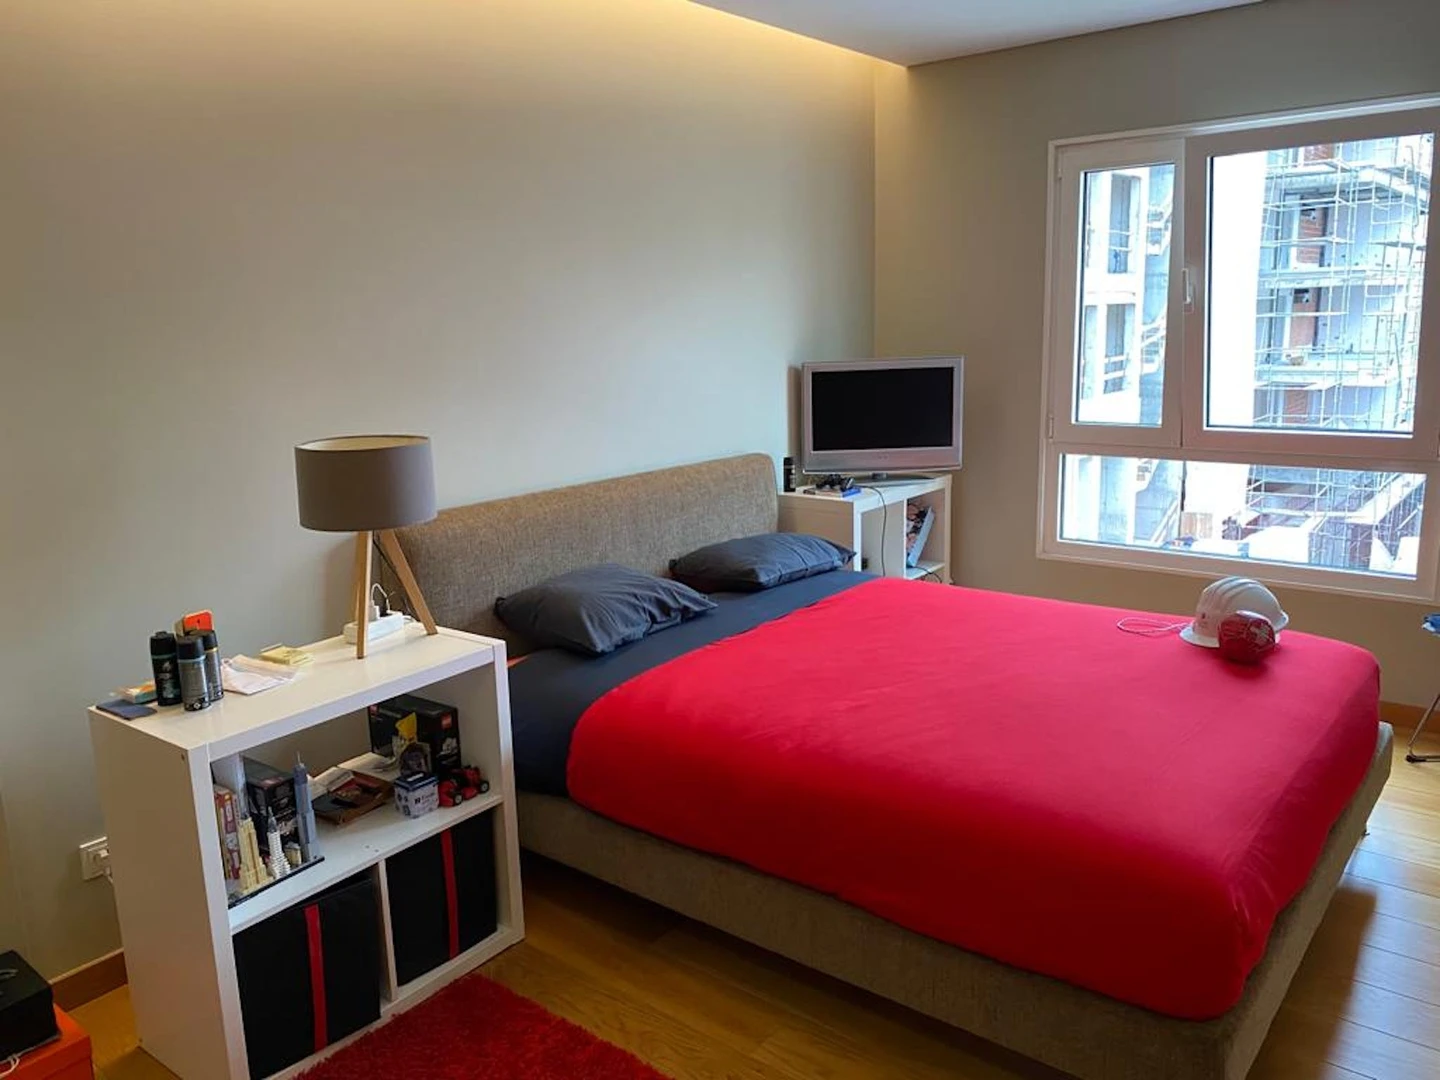 Quarto para alugar num apartamento partilhado em Coimbra